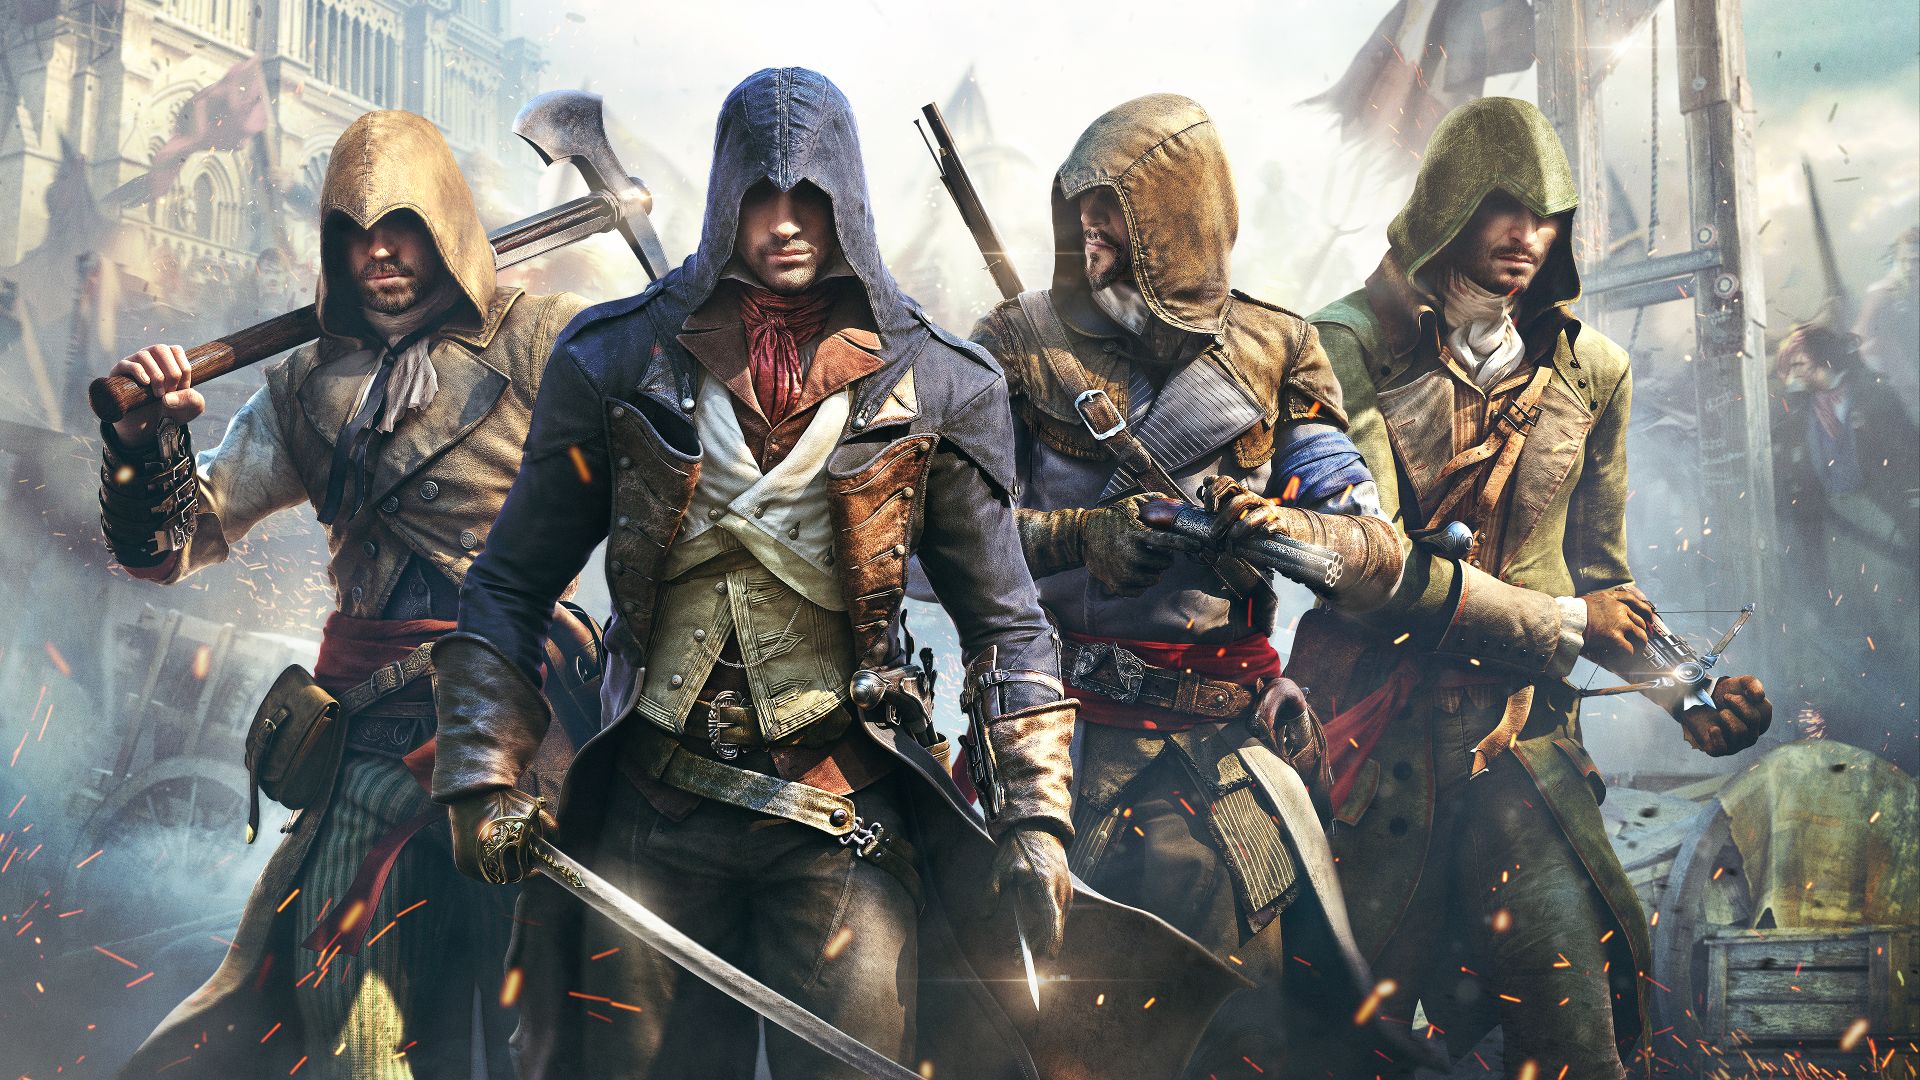 Káº¿t quáº£ hÃ¬nh áº£nh cho Assassins Creed Unity